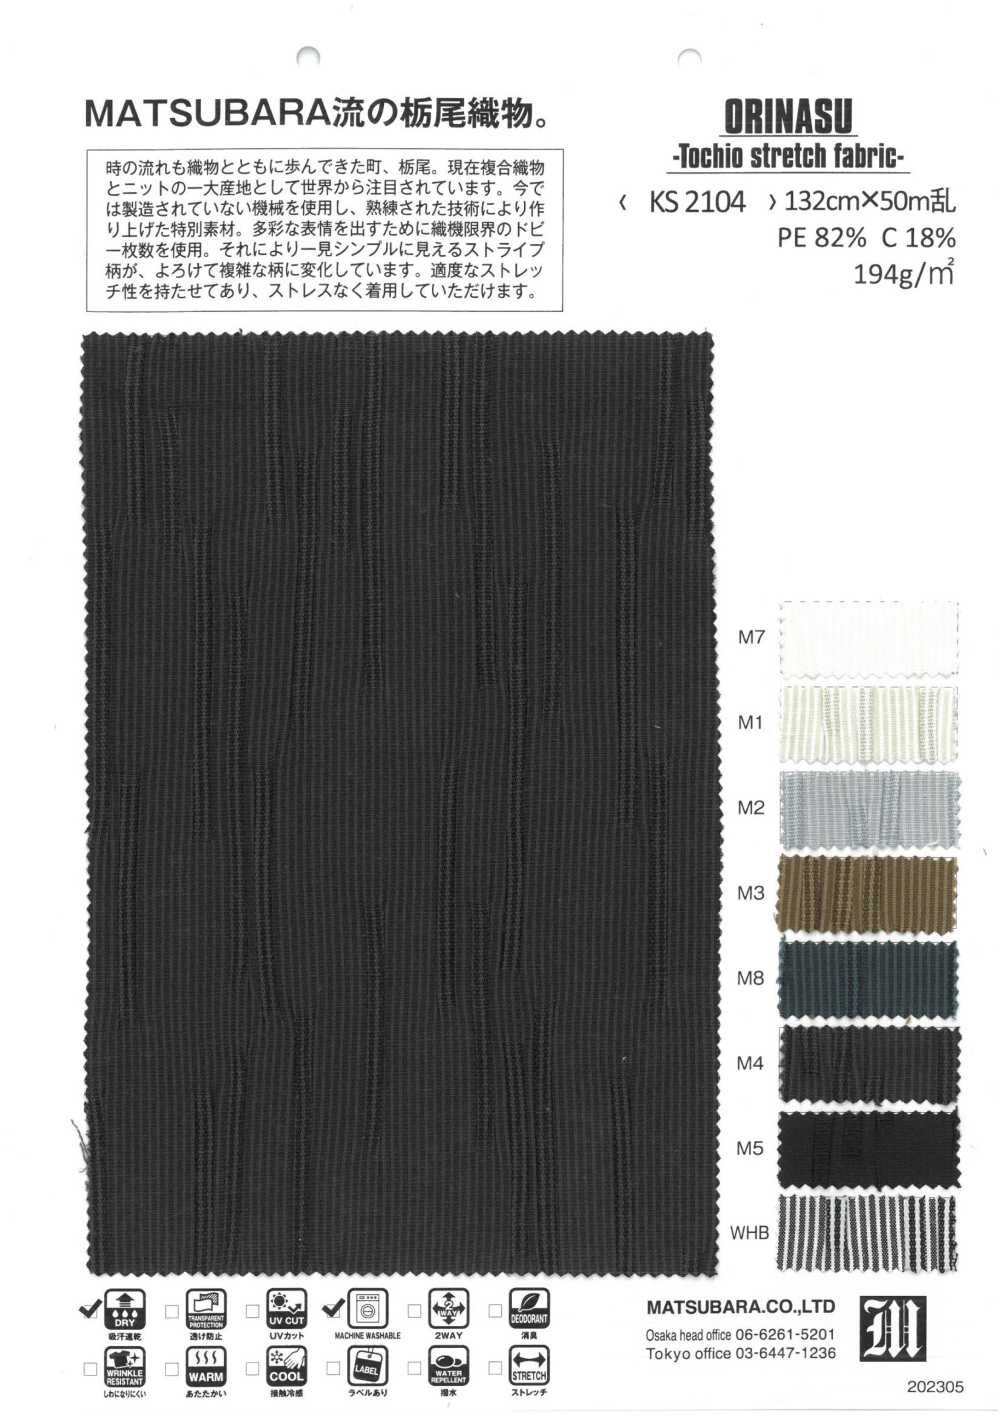 KS2104 ORINASU -Tecido Elástico Tochio-[Têxtil / Tecido] Matsubara